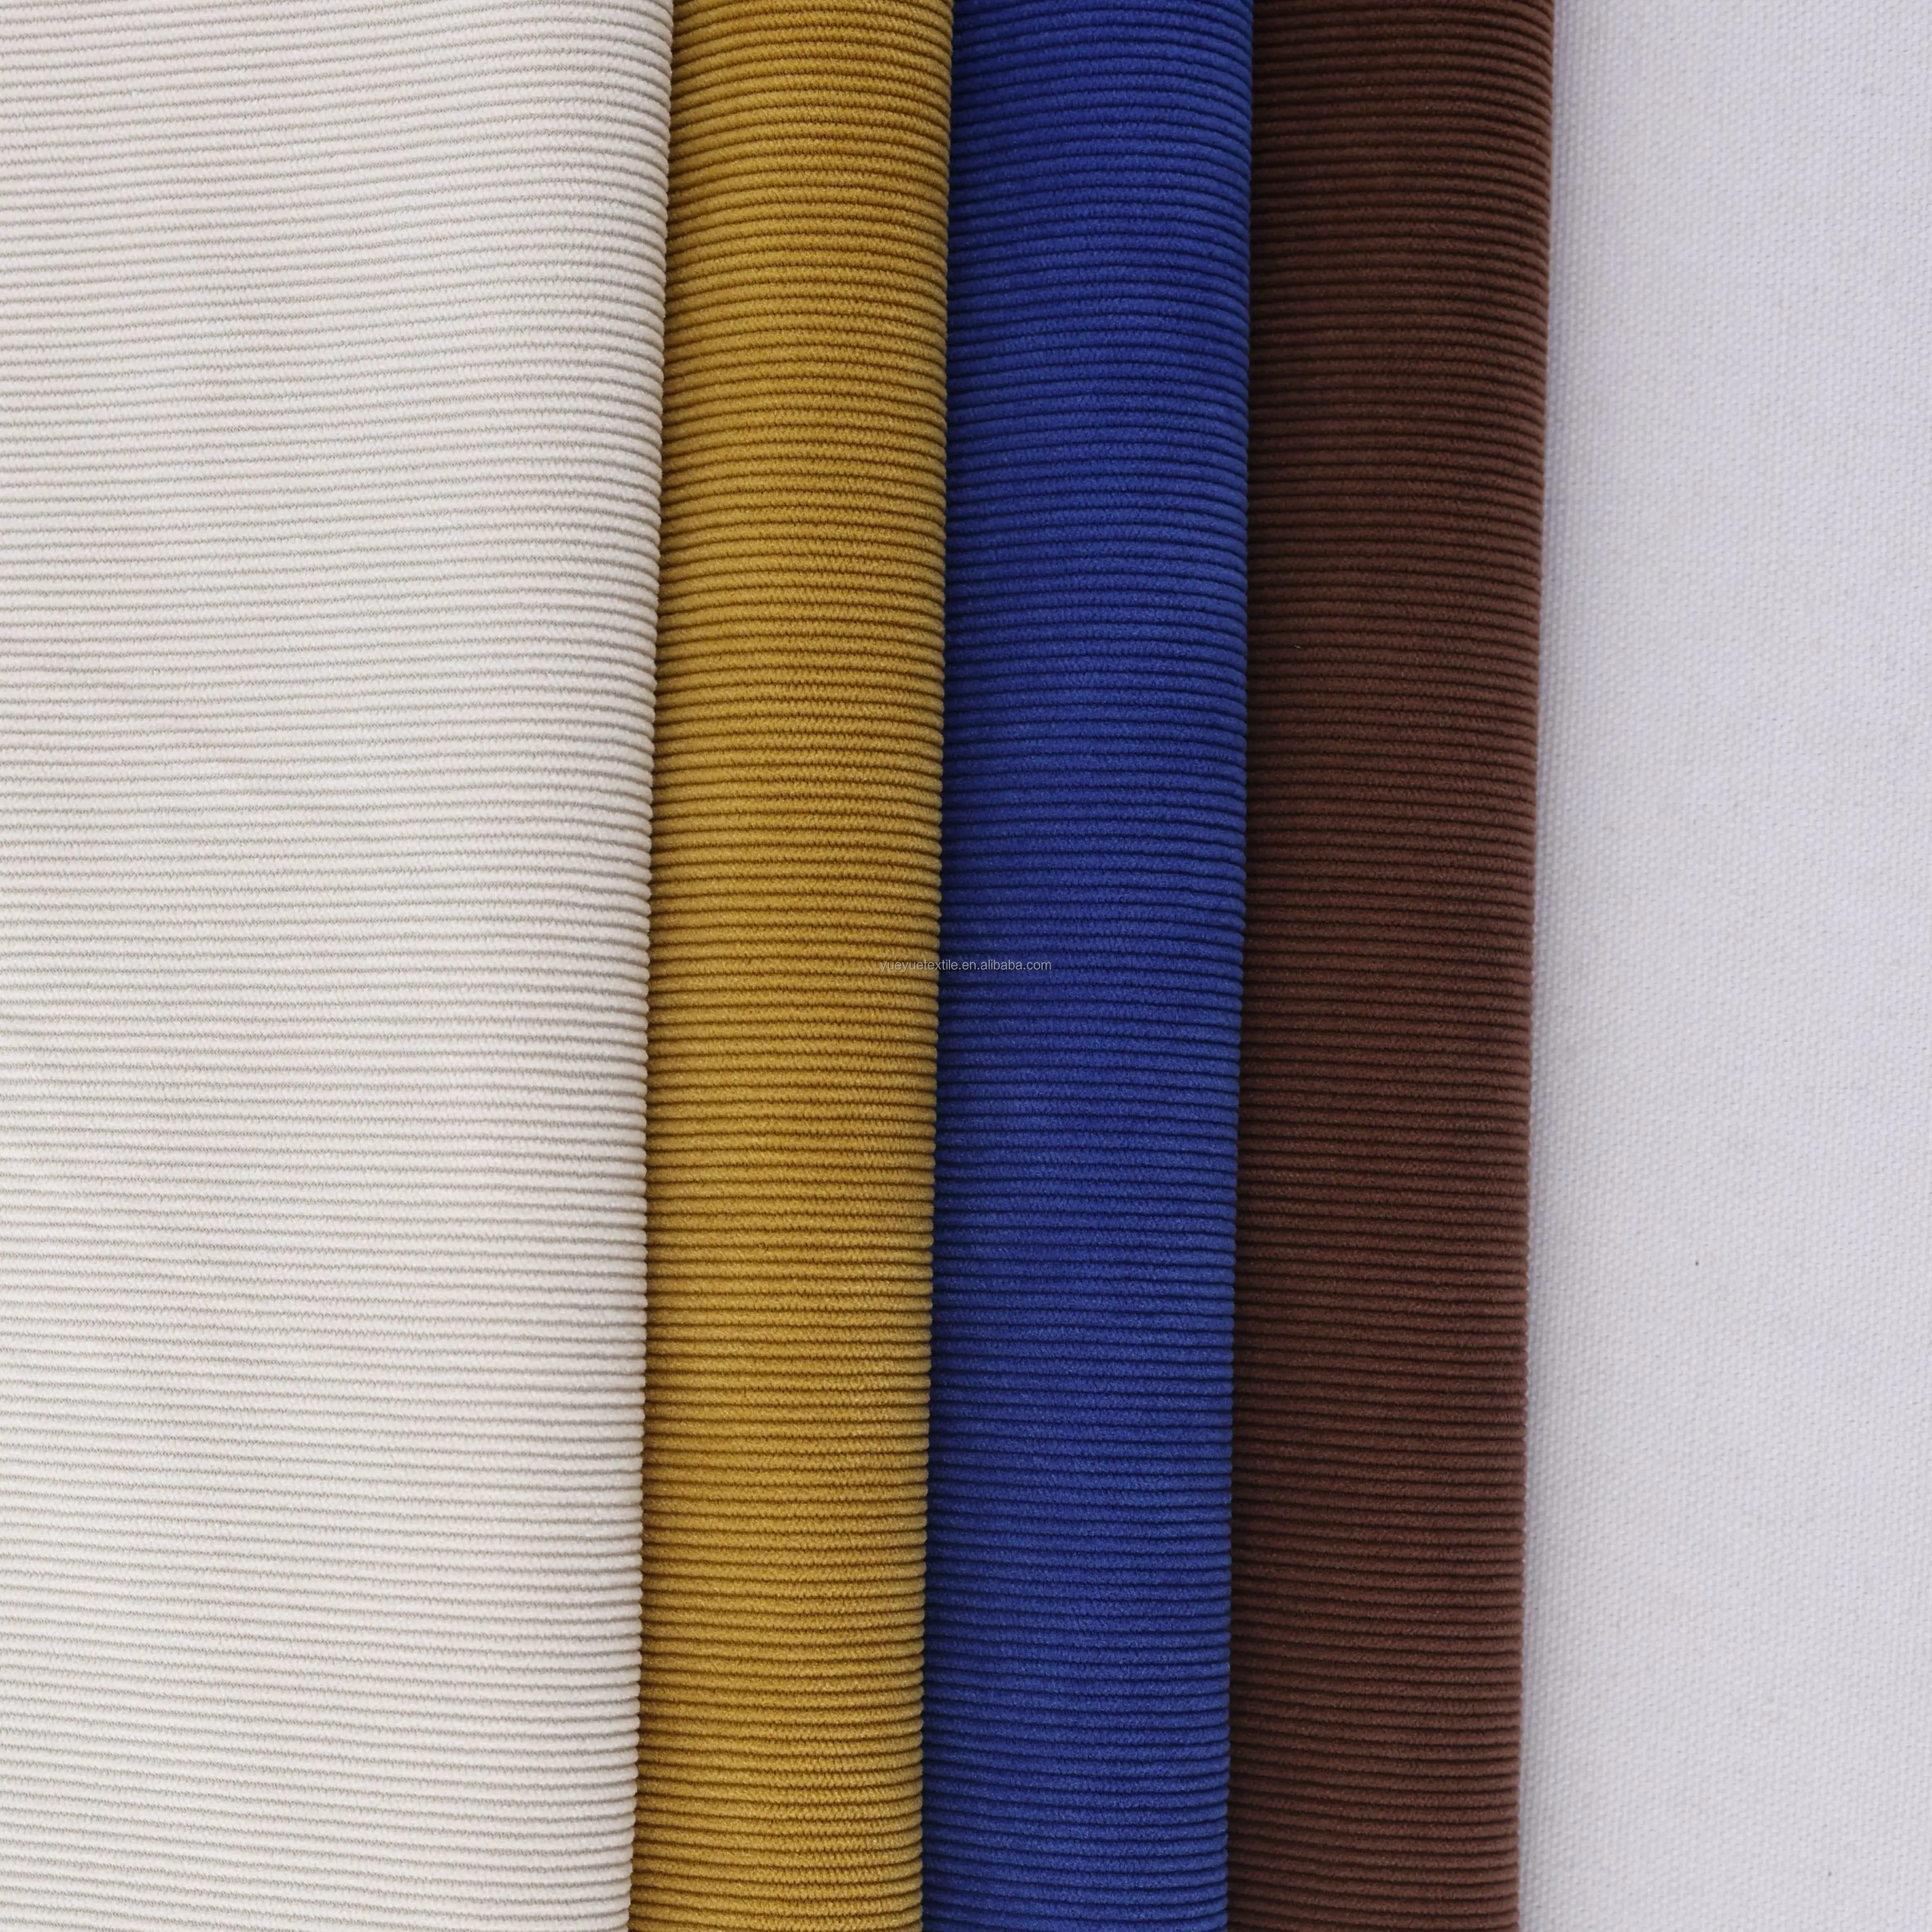 Nhà Máy bán hàng trực tiếp rộng 4 wale vải to sợi vải cho phù hợp với và quần